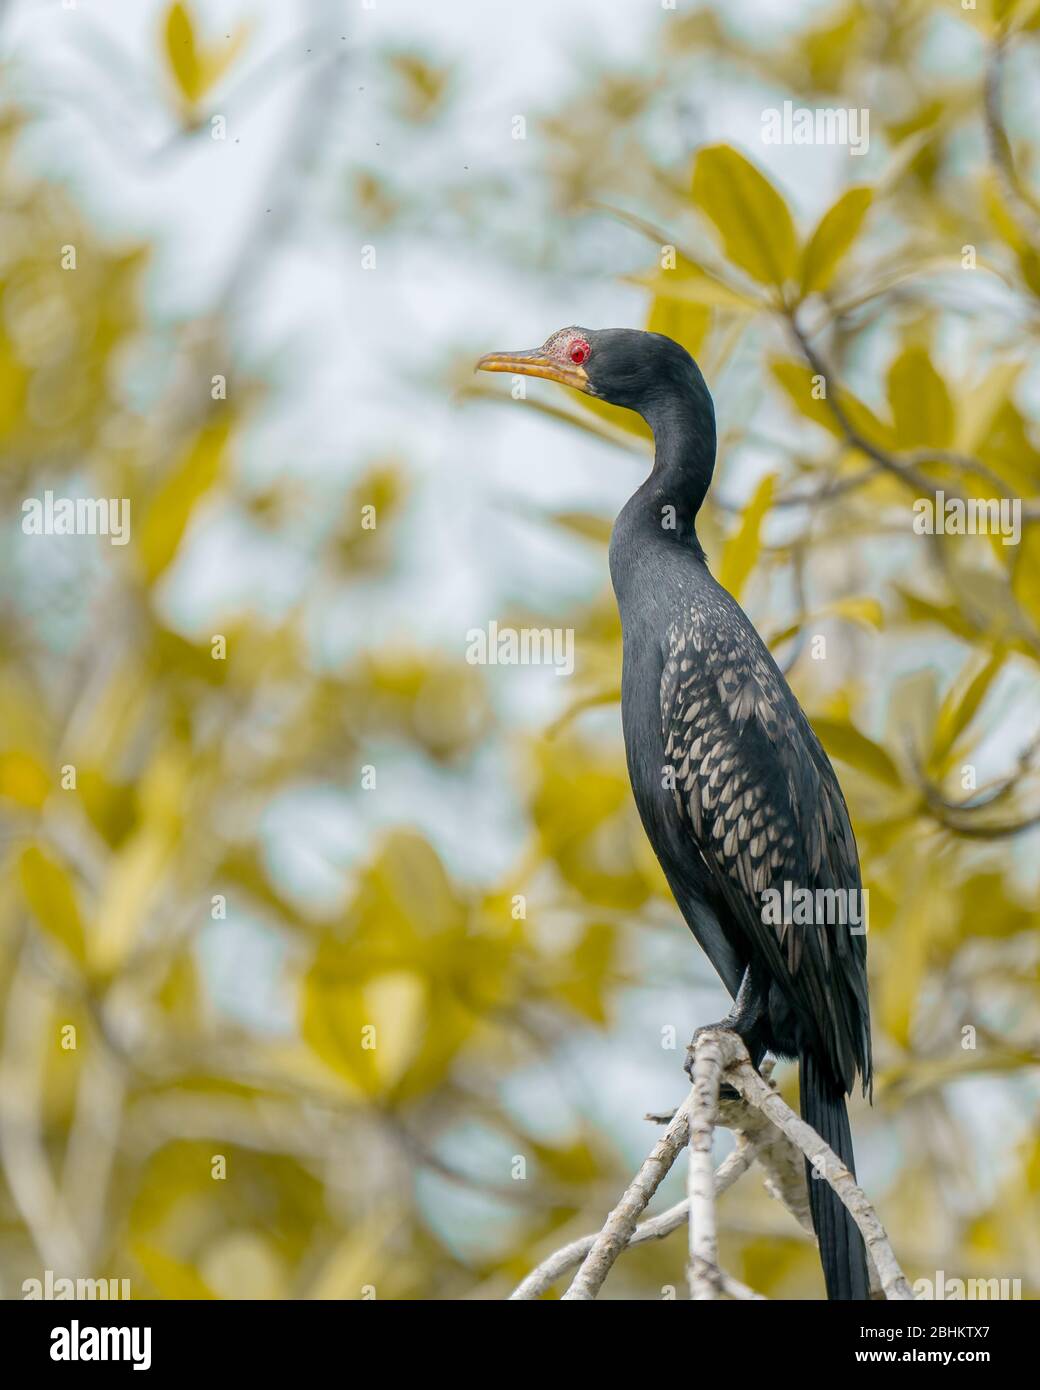 Las grandes aves cormoranes de Reed de Akwidaa, Región Occidental de Ghana. Estas aves gobiernan los ríos del ecosistema de agua protegida del municipio de Ahanta. Foto de stock